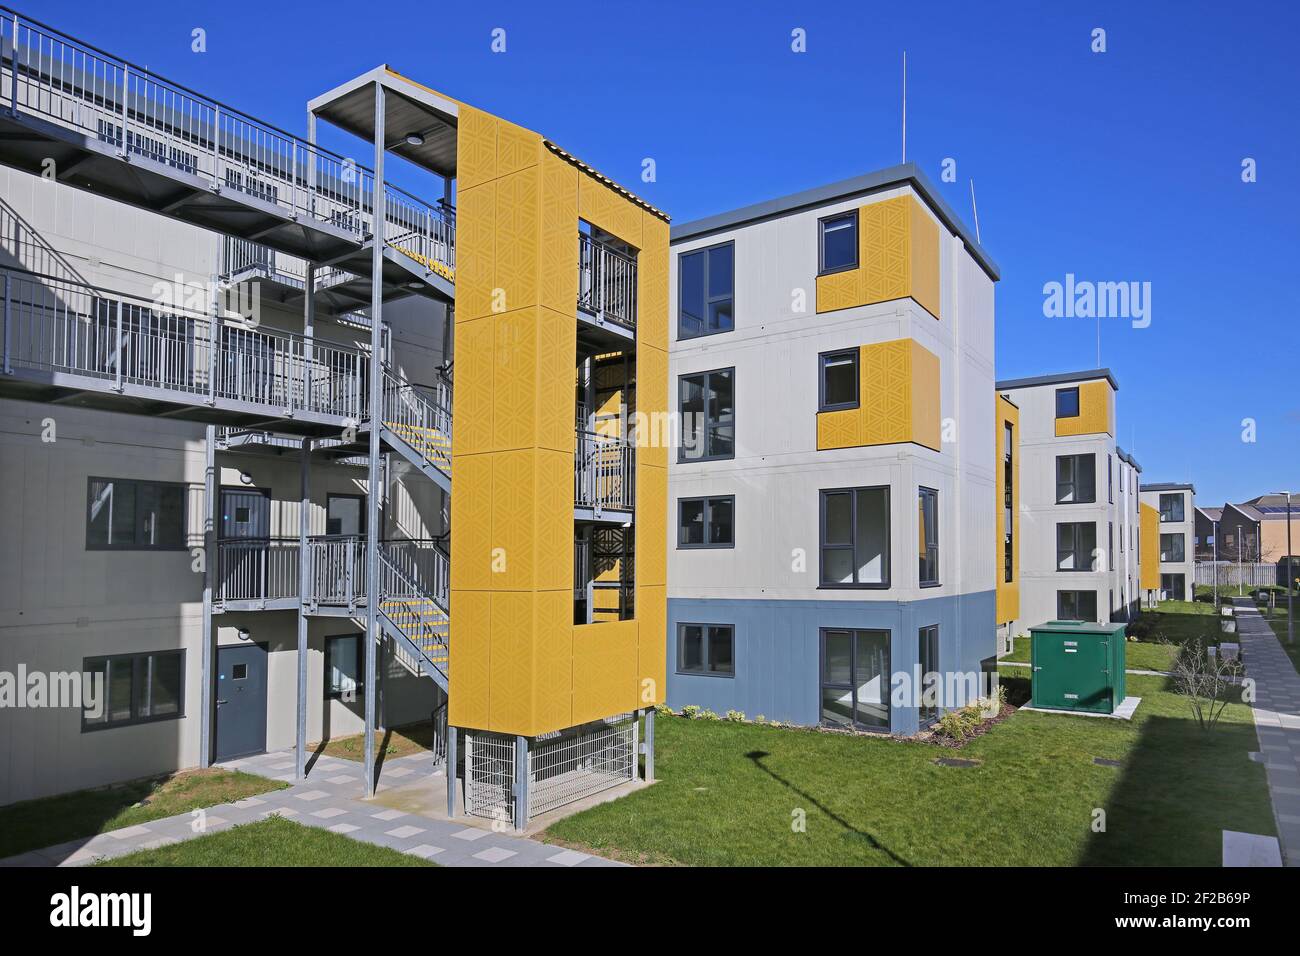 Sviluppo di nuovi alloggi a Dagenham, Londra, Regno Unito. Costruita in modo rapido ed economico utilizzando una struttura modulare per fornire alloggio ai senzatetto. Foto Stock